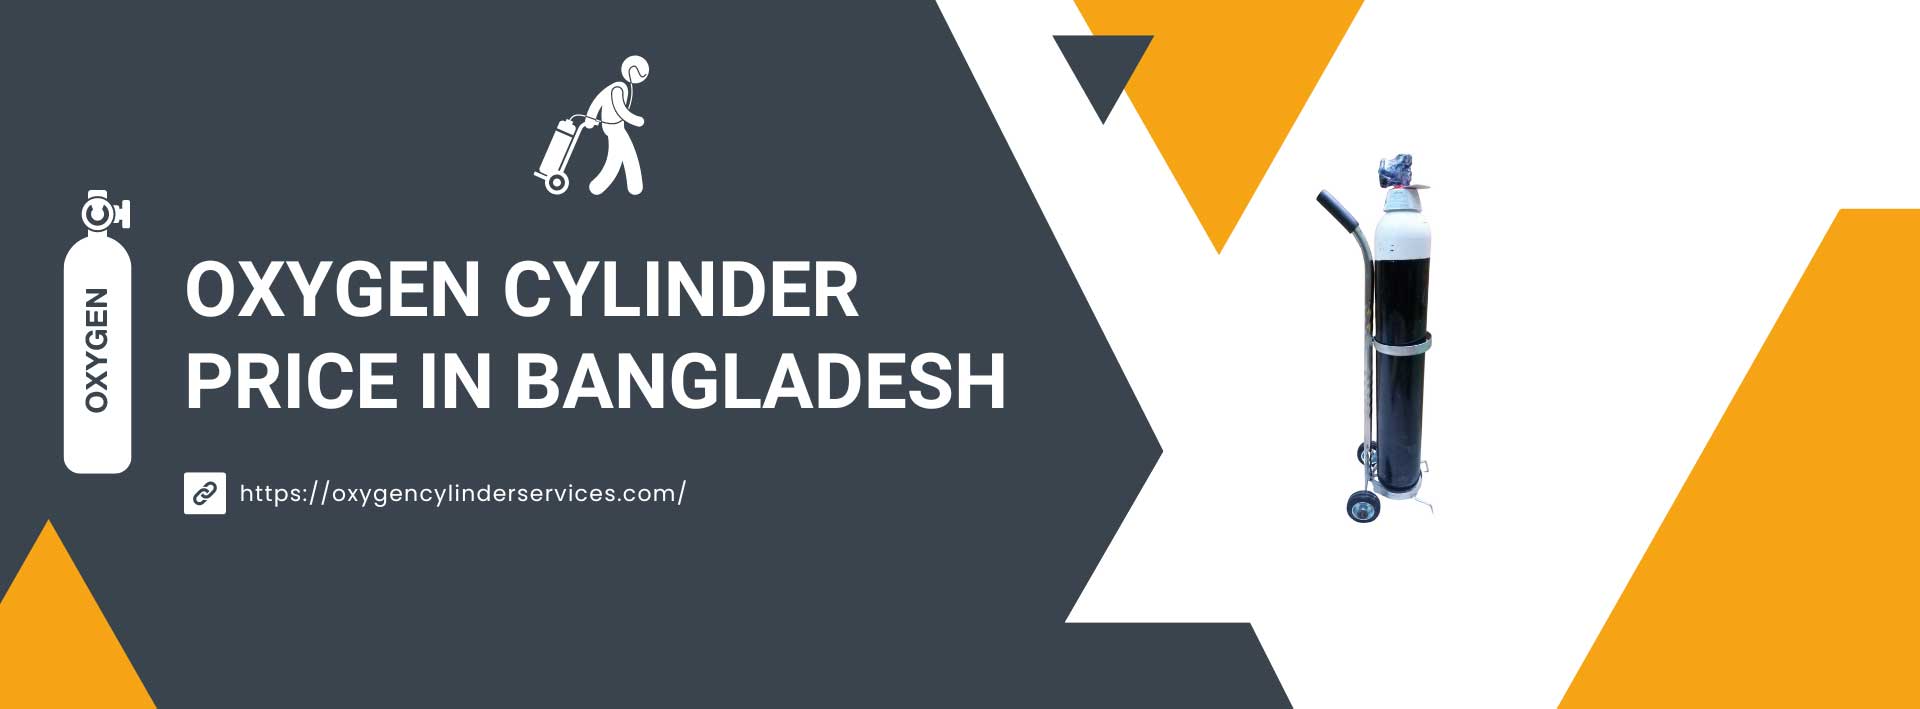 Oxygen Cylinder Price in Bangladesh